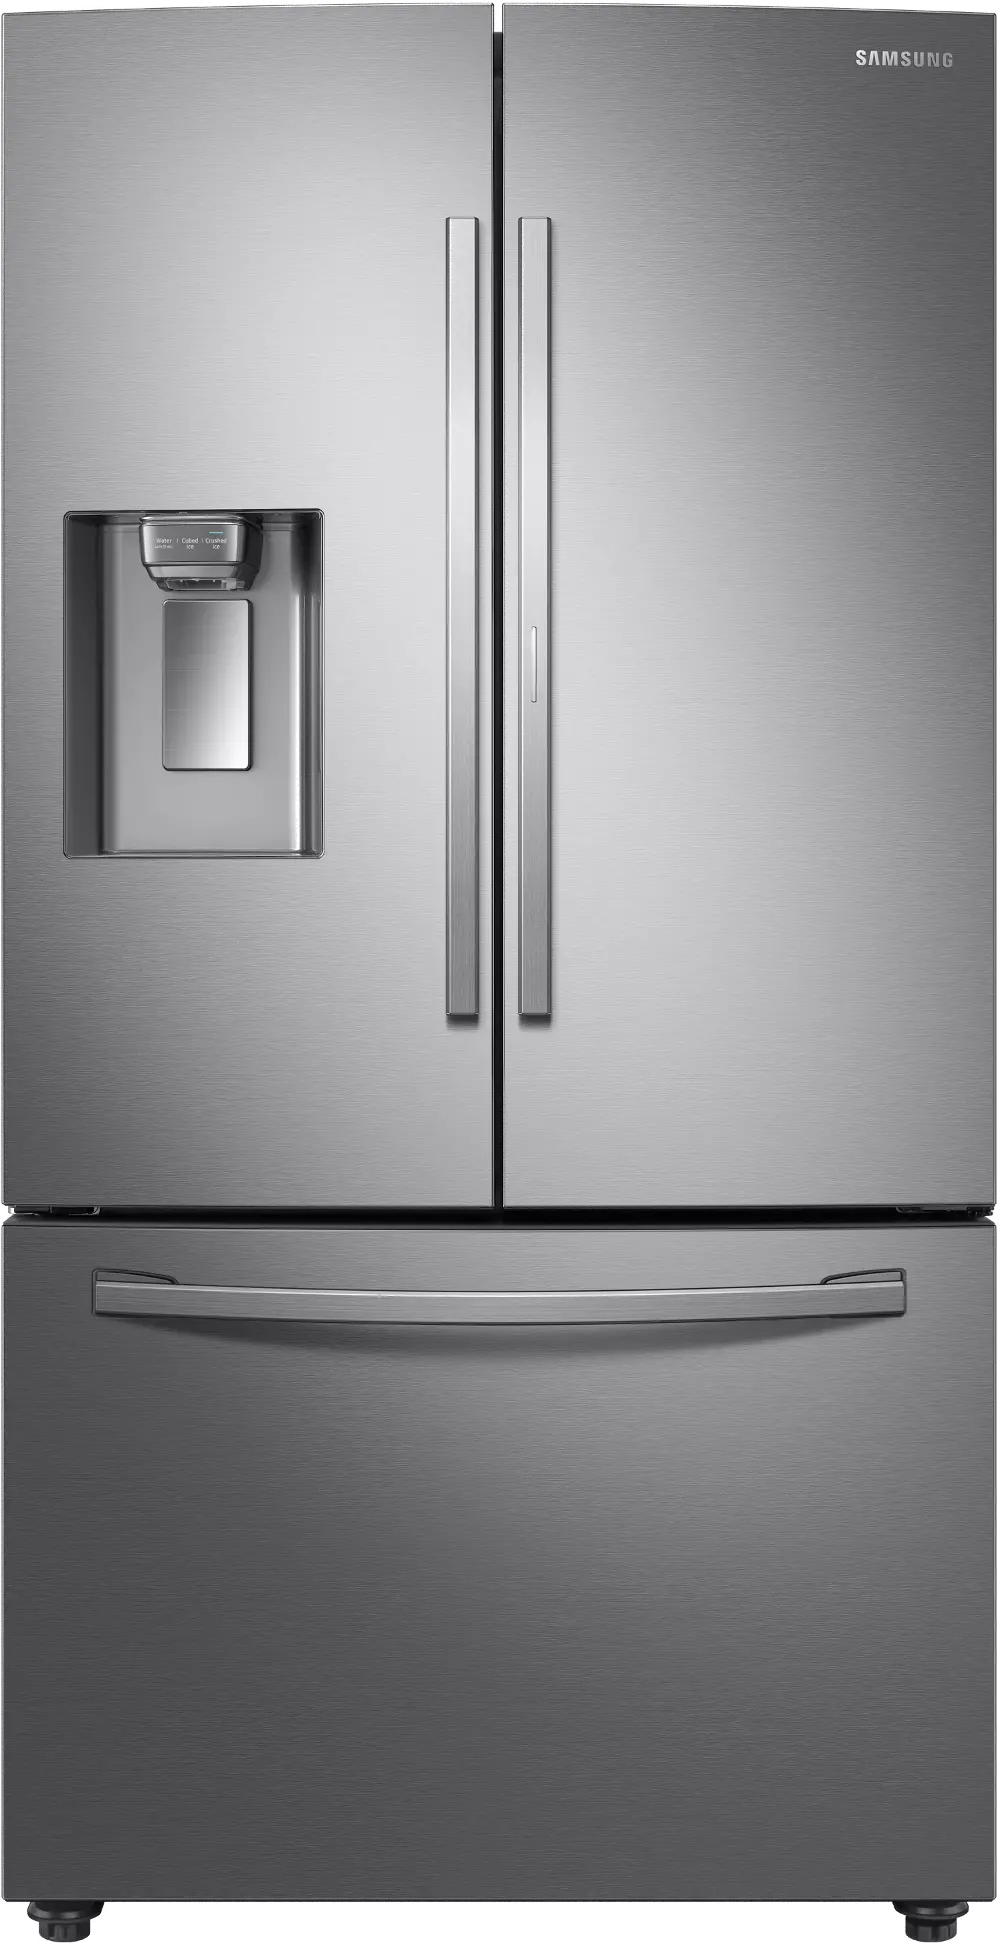 RF28R6301SR Samsung 28 cu ft French Door in Door Refrigerator - Stainless Steel-1